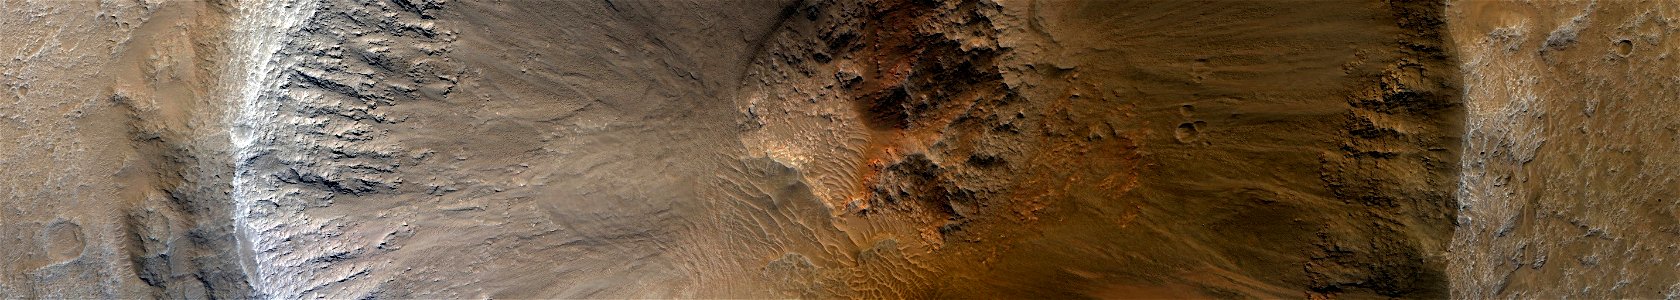 Mars - Crater in Acidalia Planitia photo